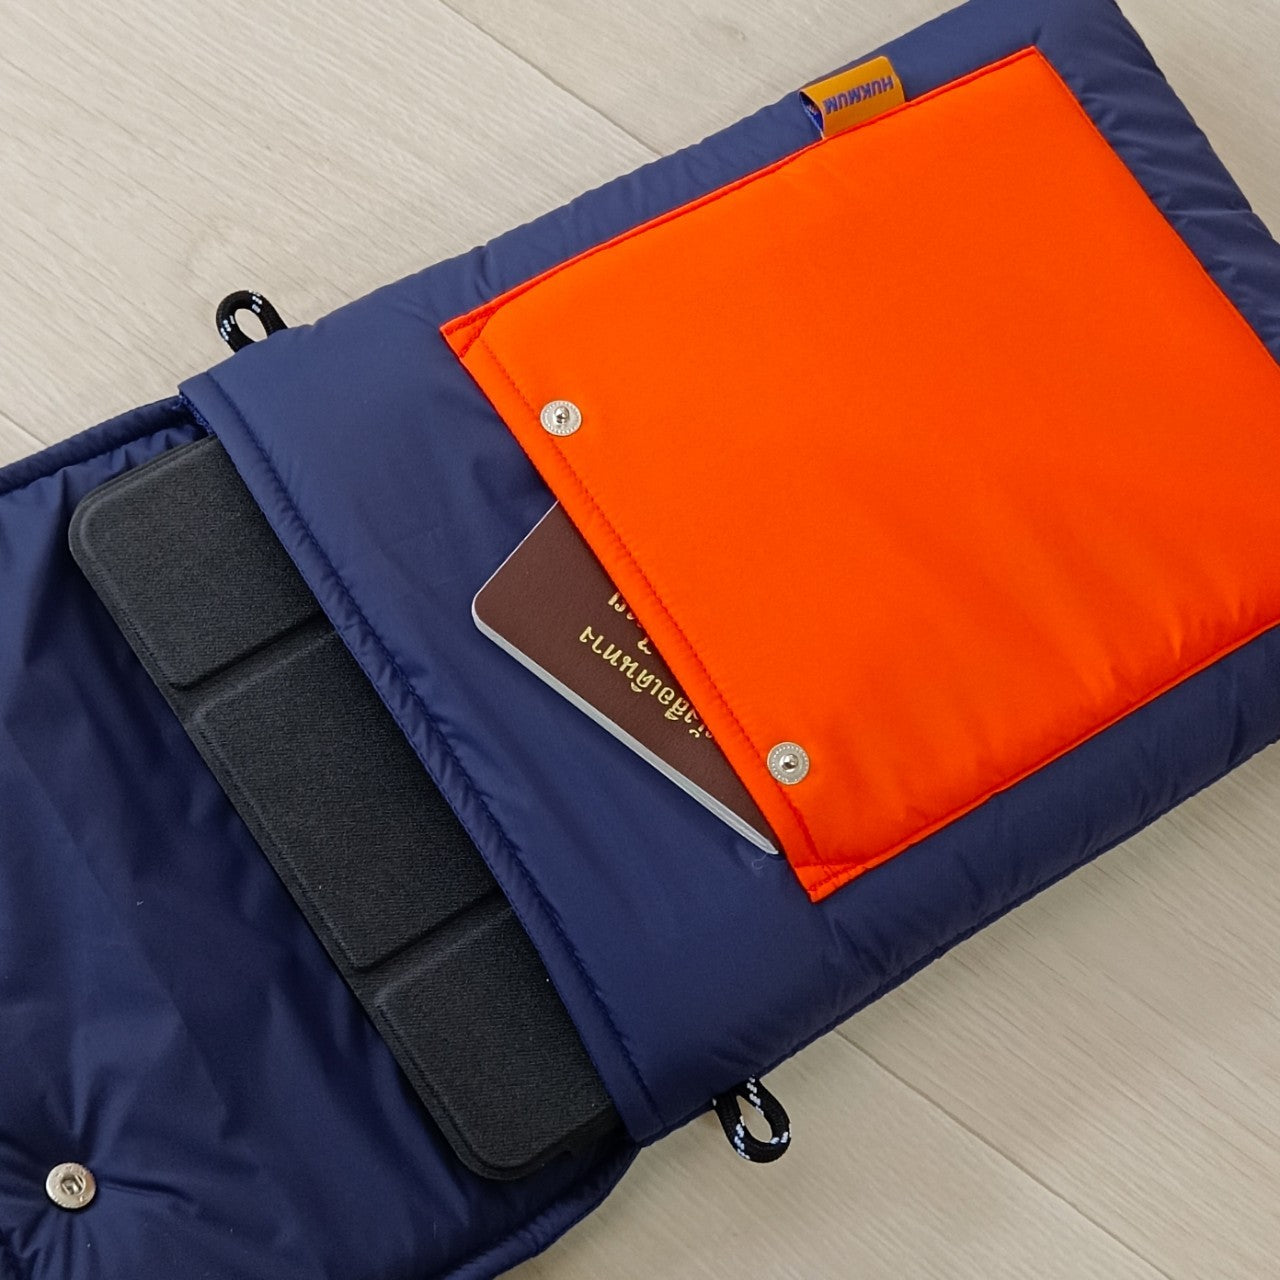 HUKMUM - 15" Tabtab Laptop Bag (Navy Orange)